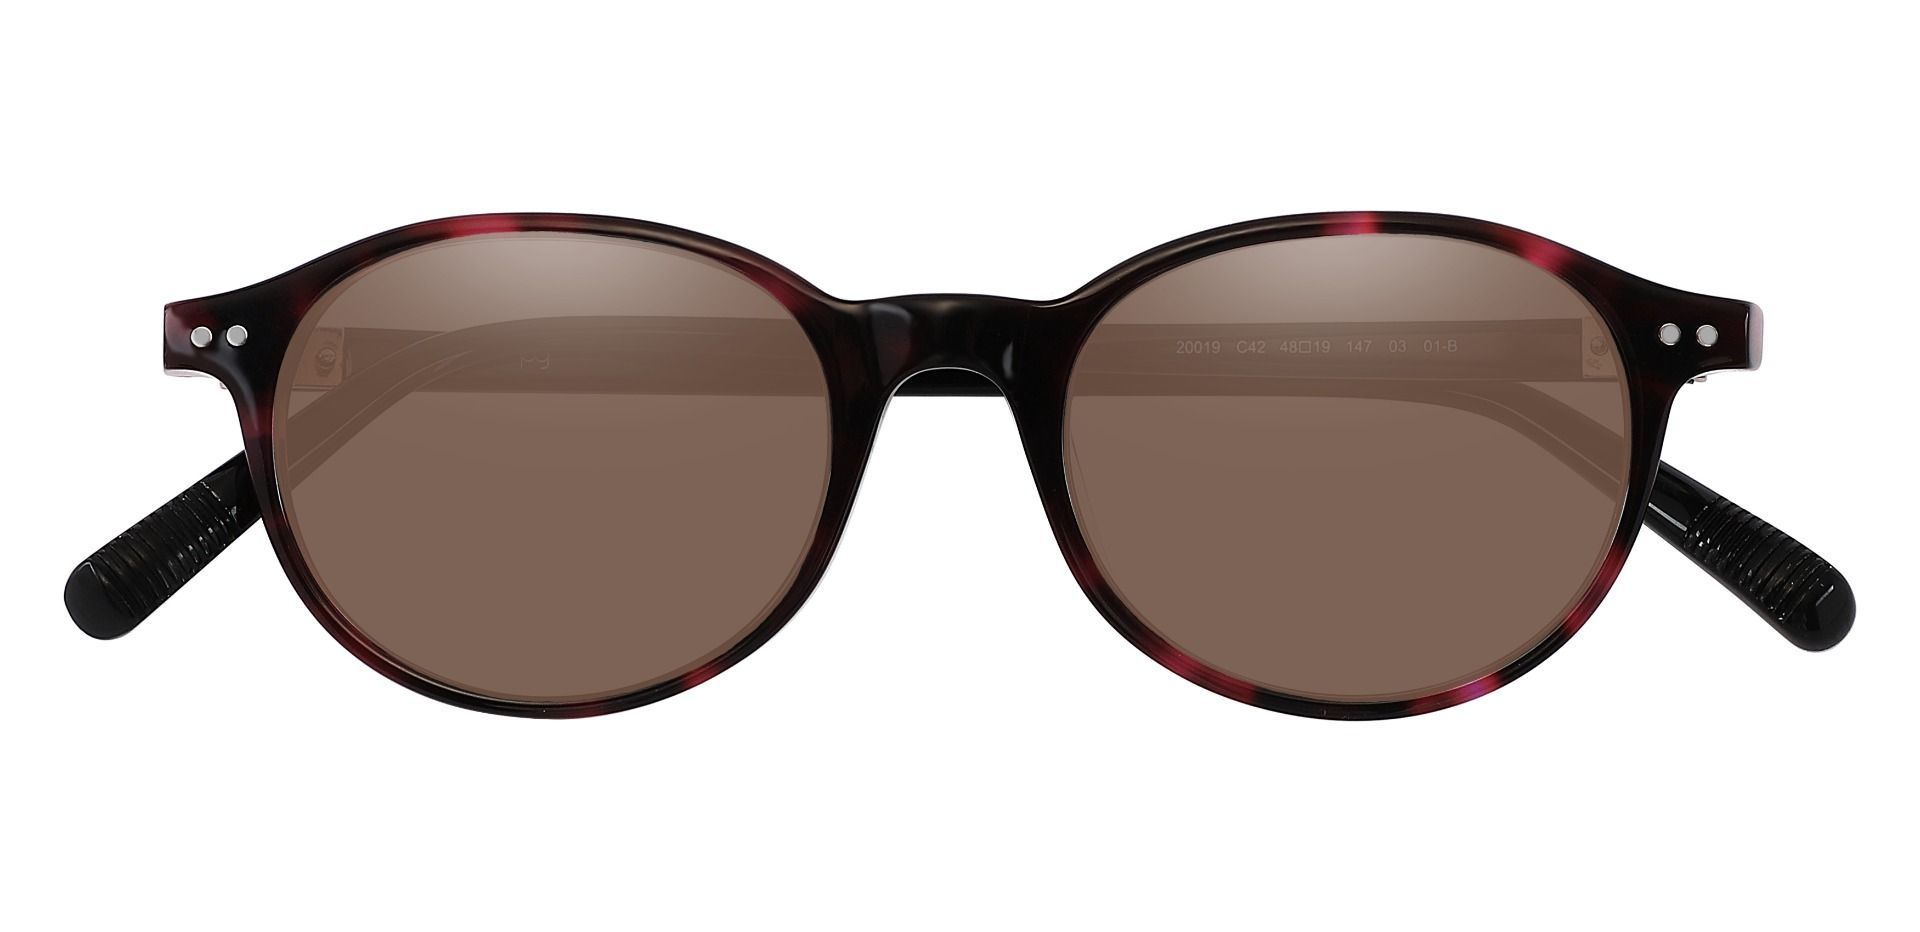 Avon Oval Prescription Sunglasses - Tortoise Frame With Brown Lenses